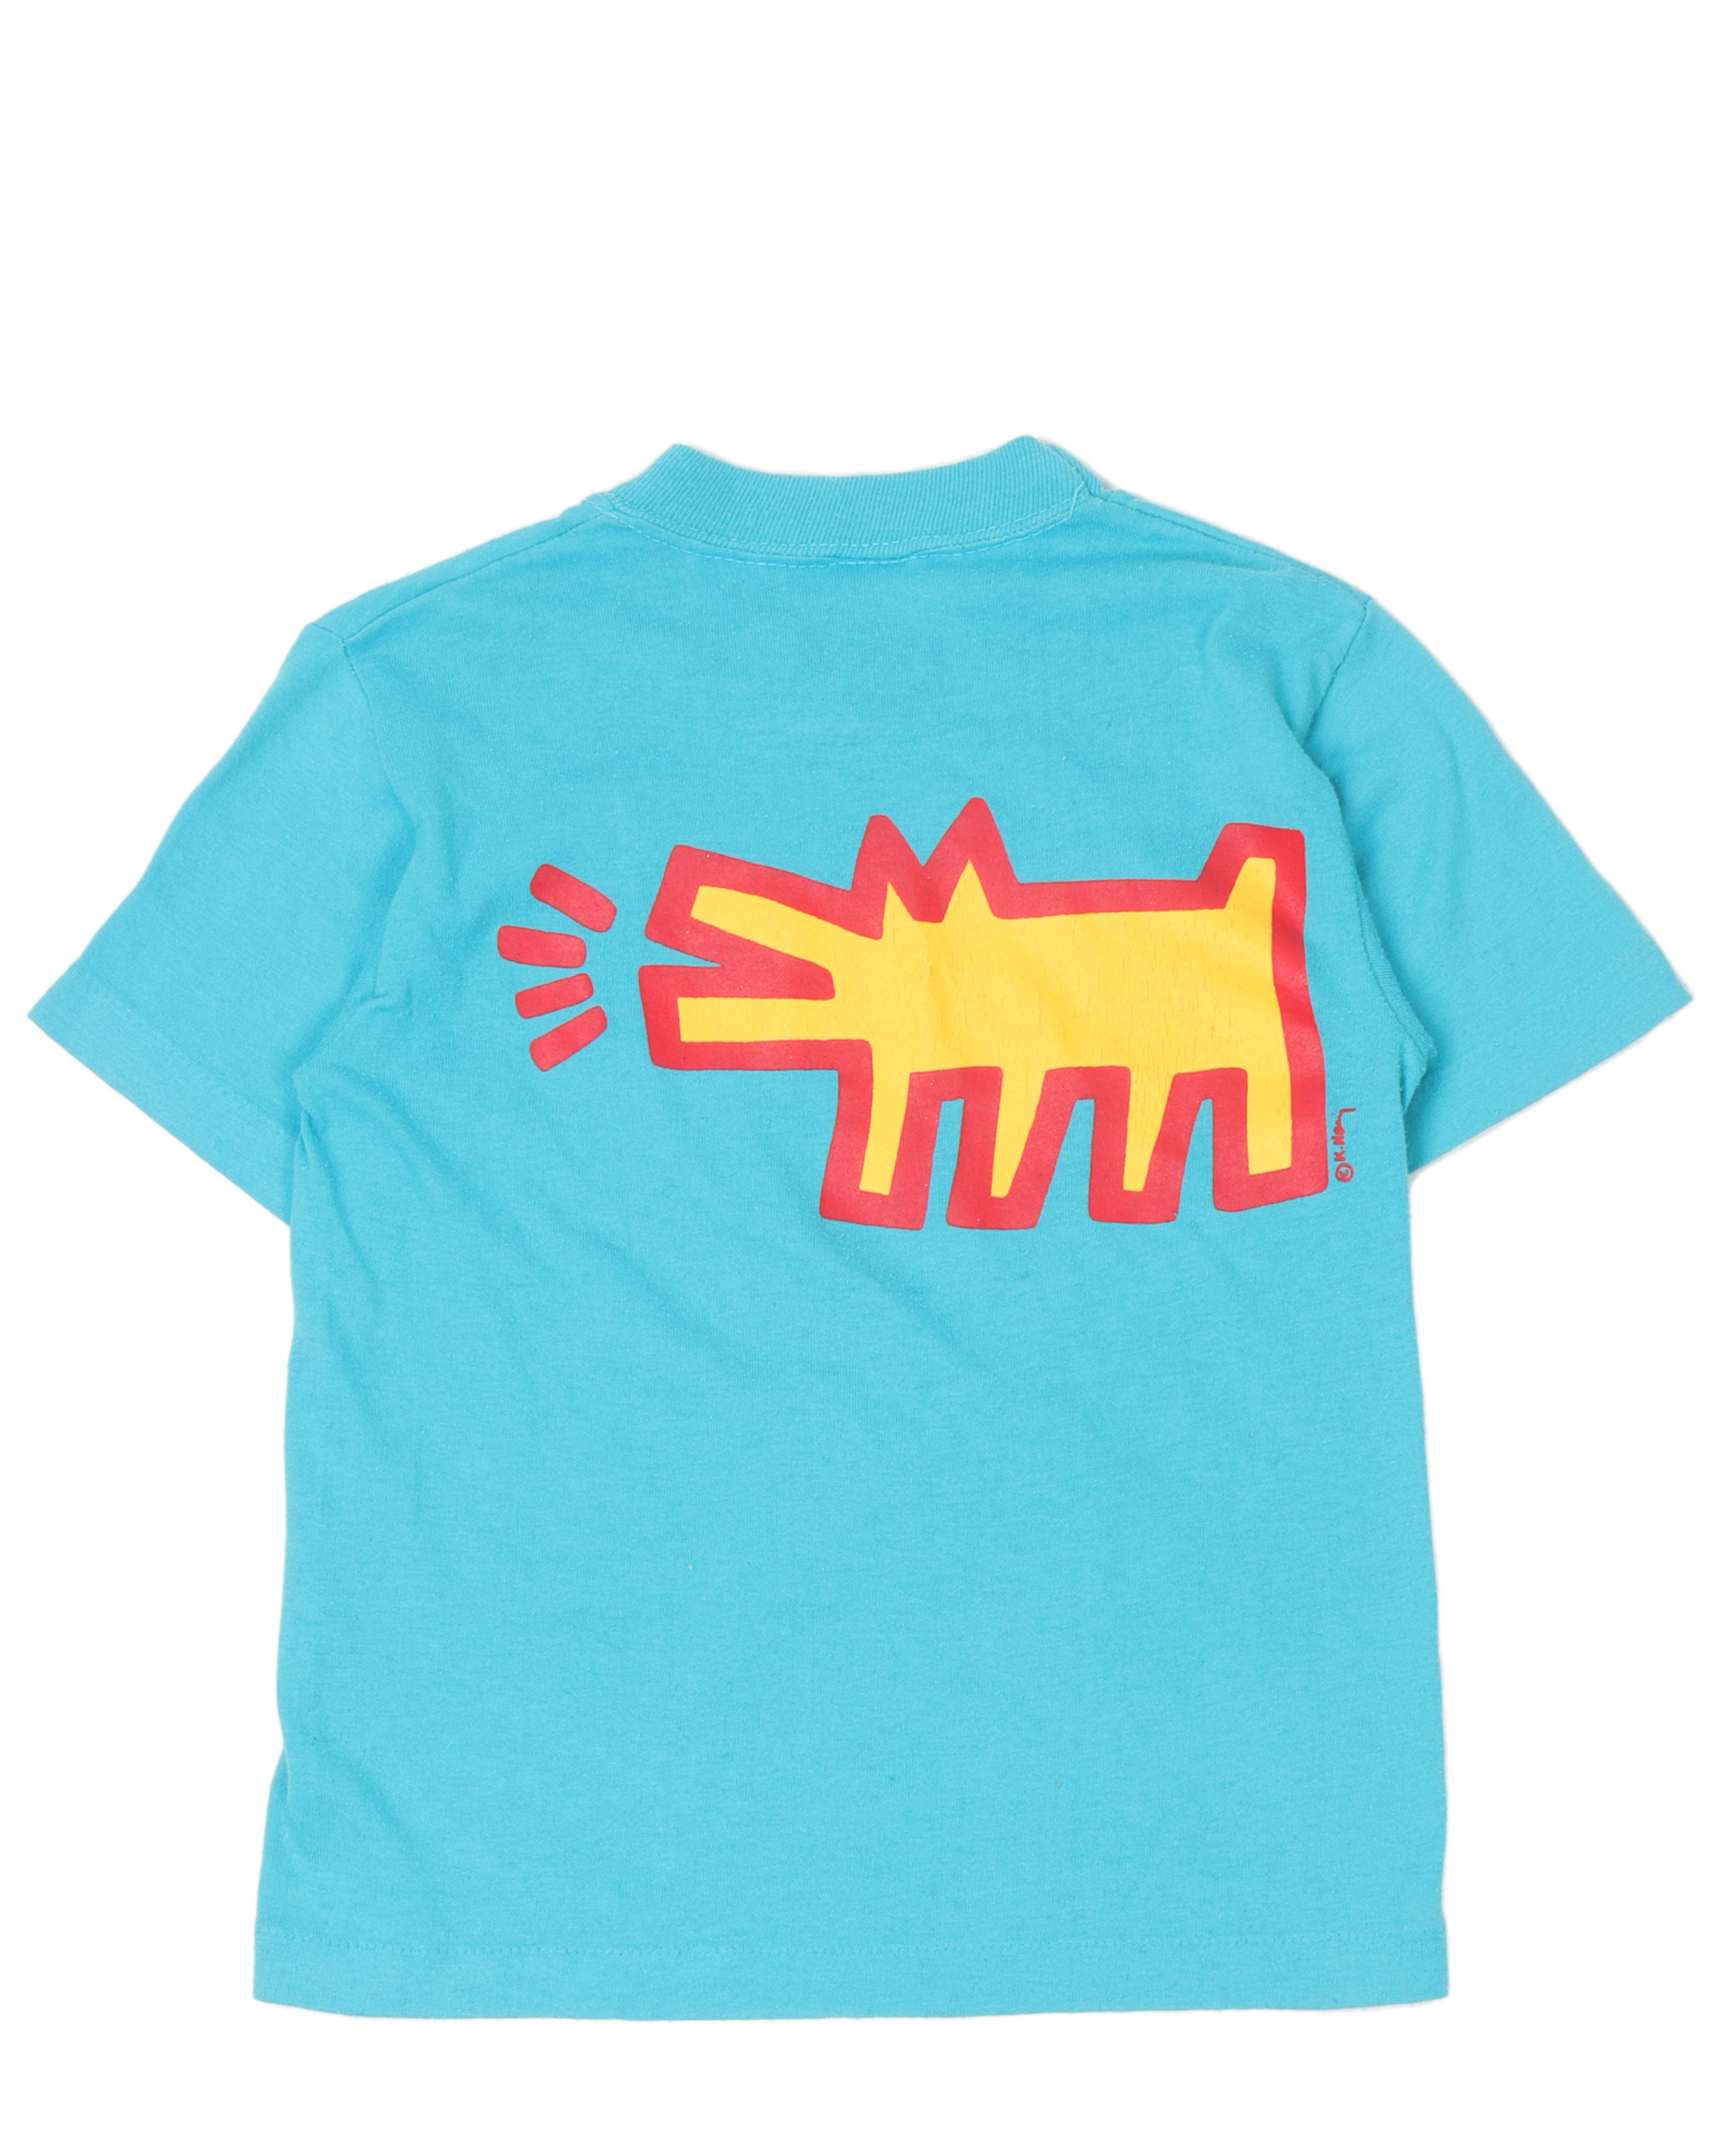 Keith Haring Baby T-Shirt